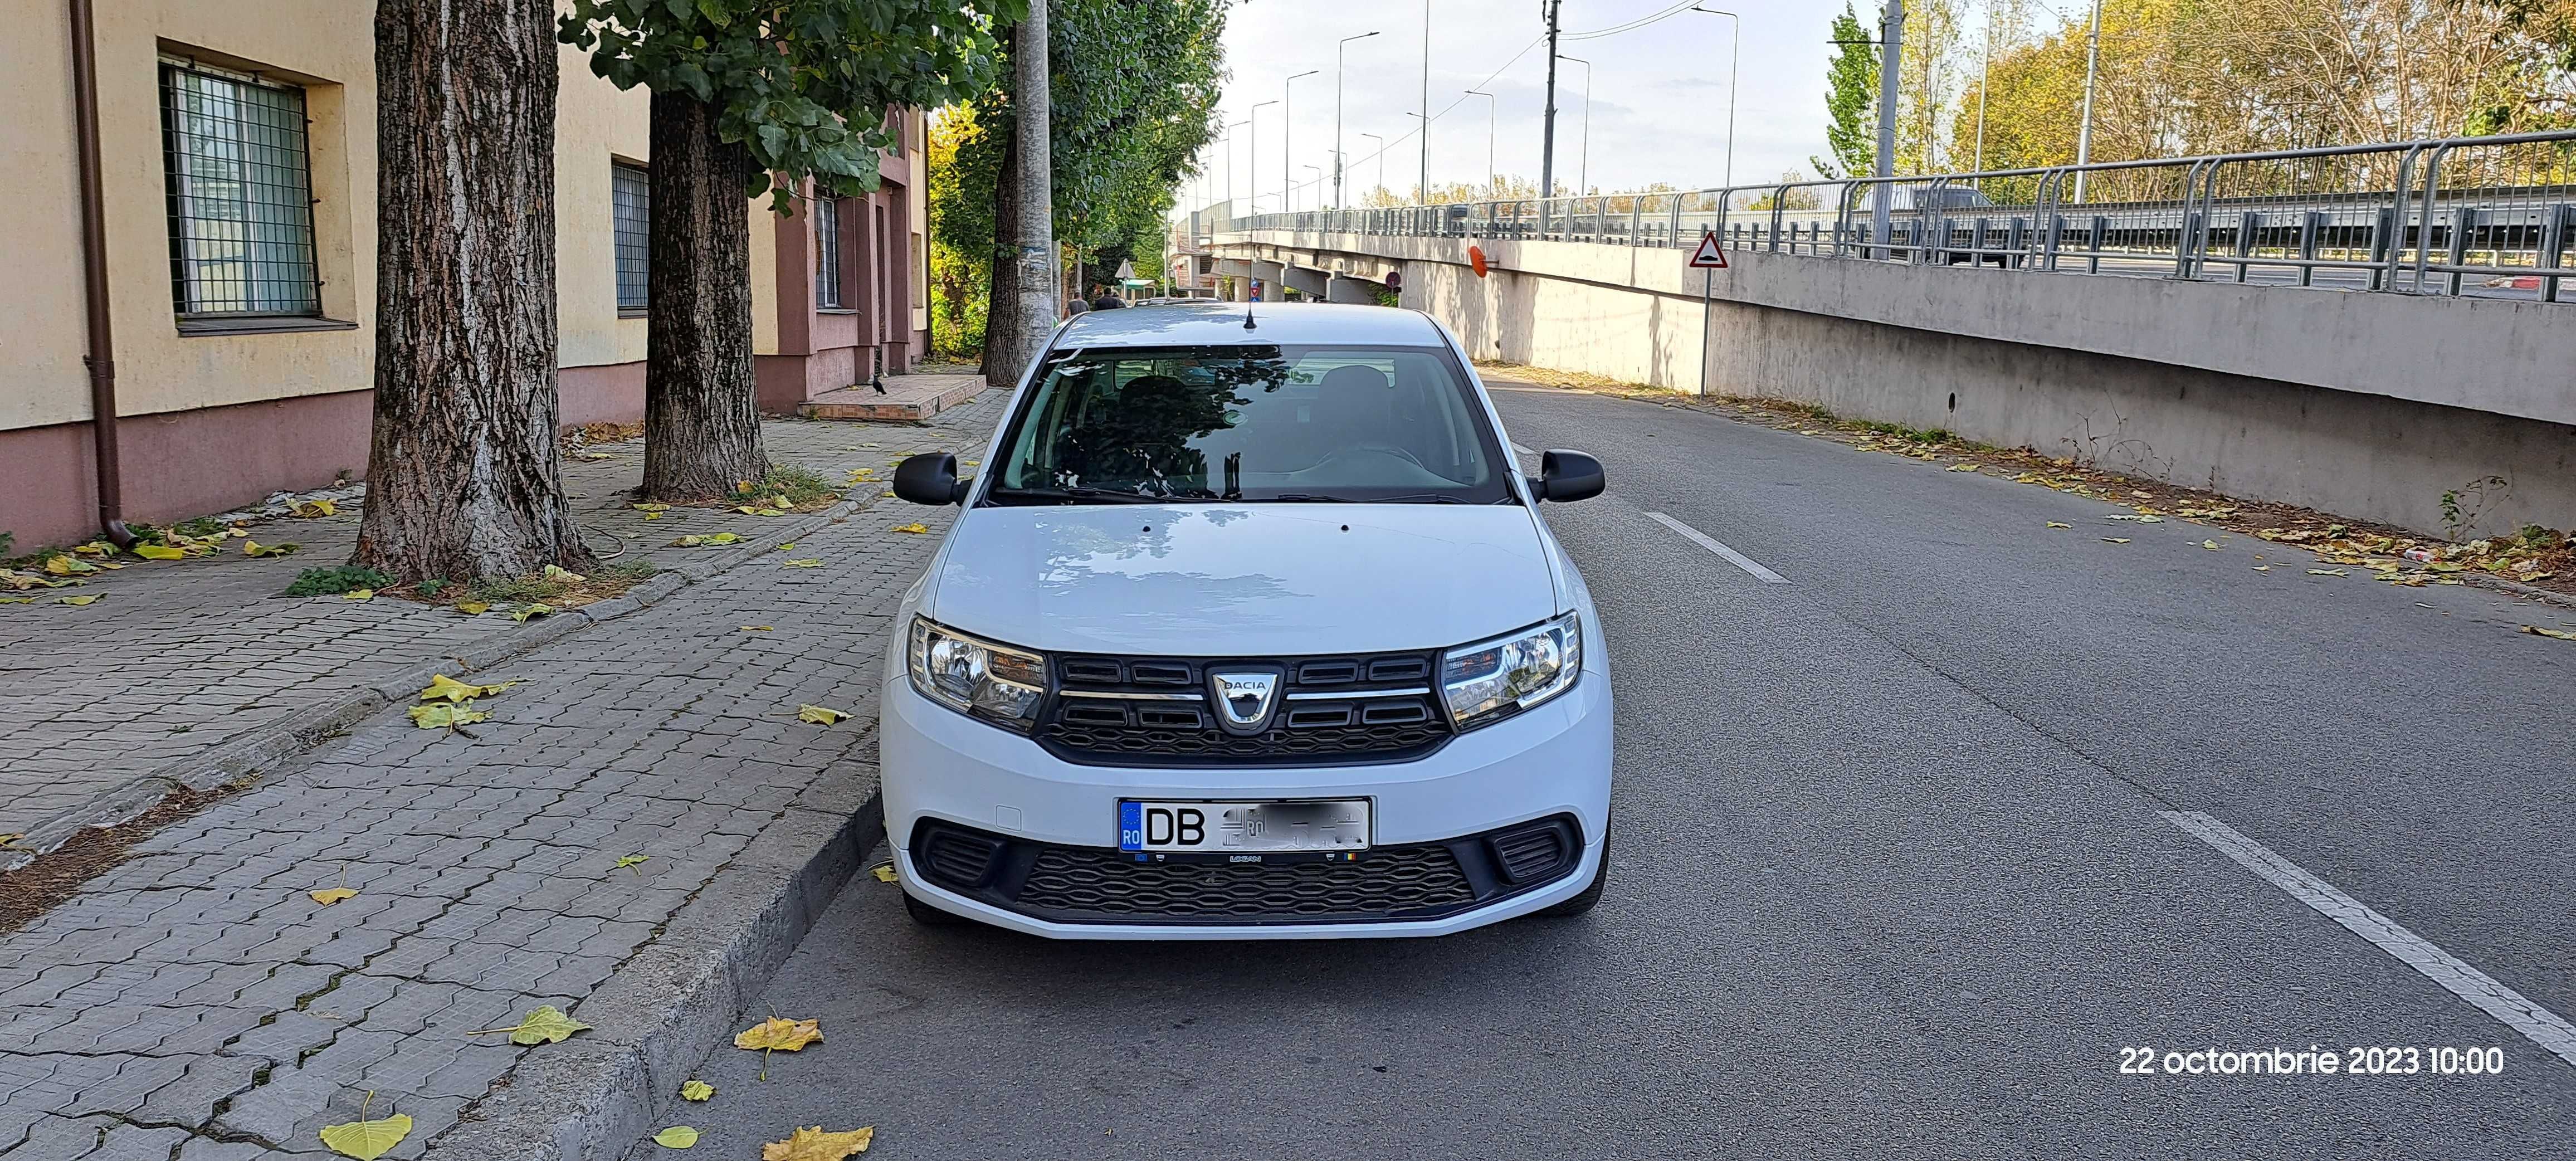 Dacia Logan 2  de vanzare